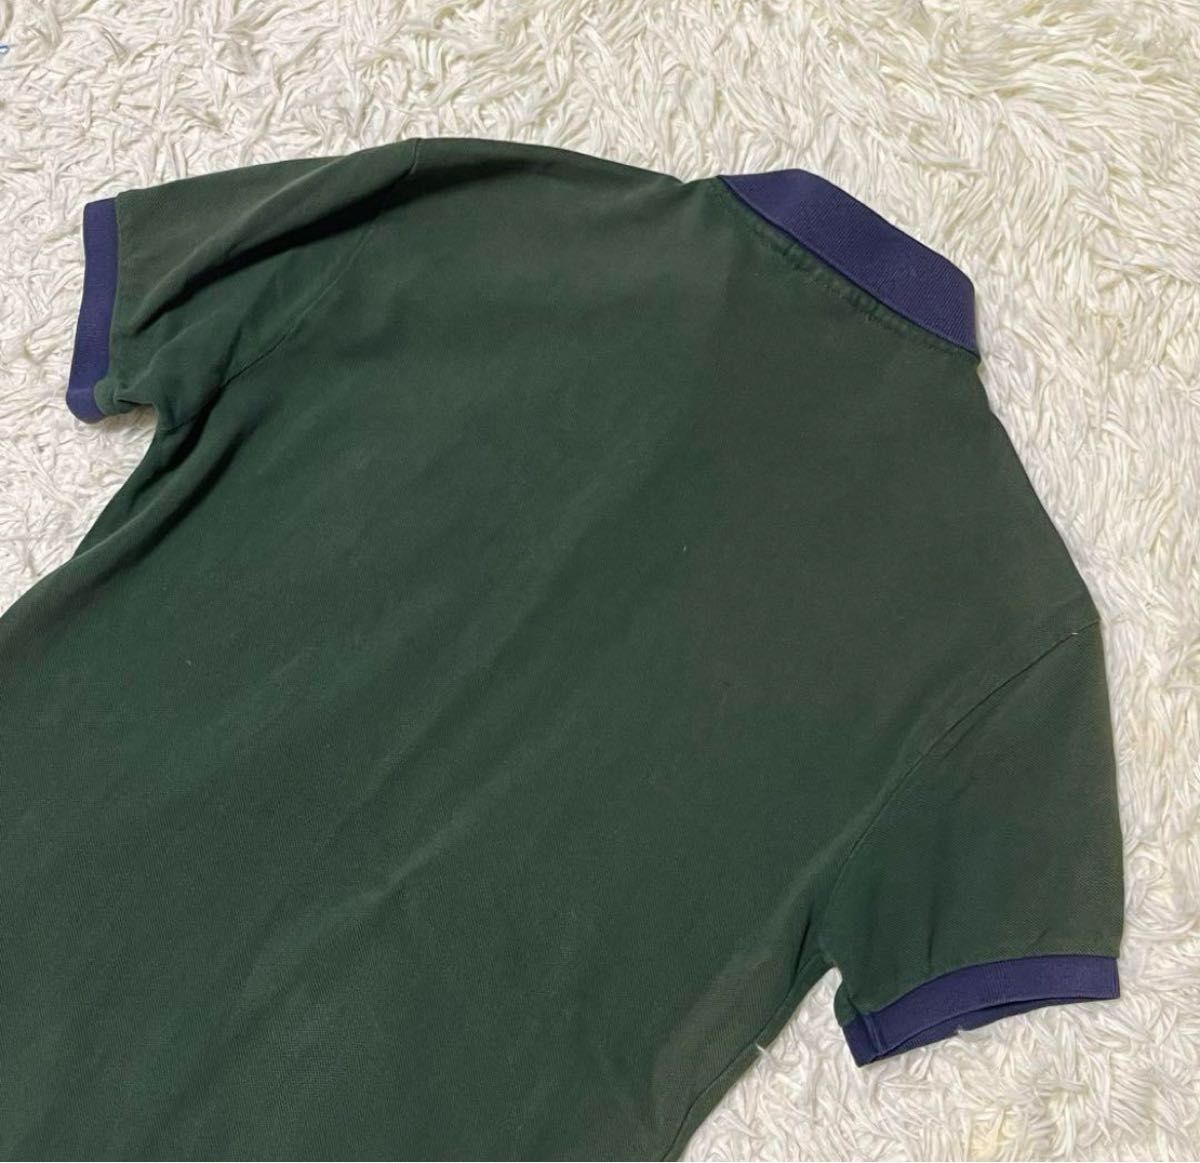 Polo Ralph Lauren ポロラルフローレン ポロシャツ 半袖 デカロゴ 刺繍 バイカラー 綿 メンズ 緑 S